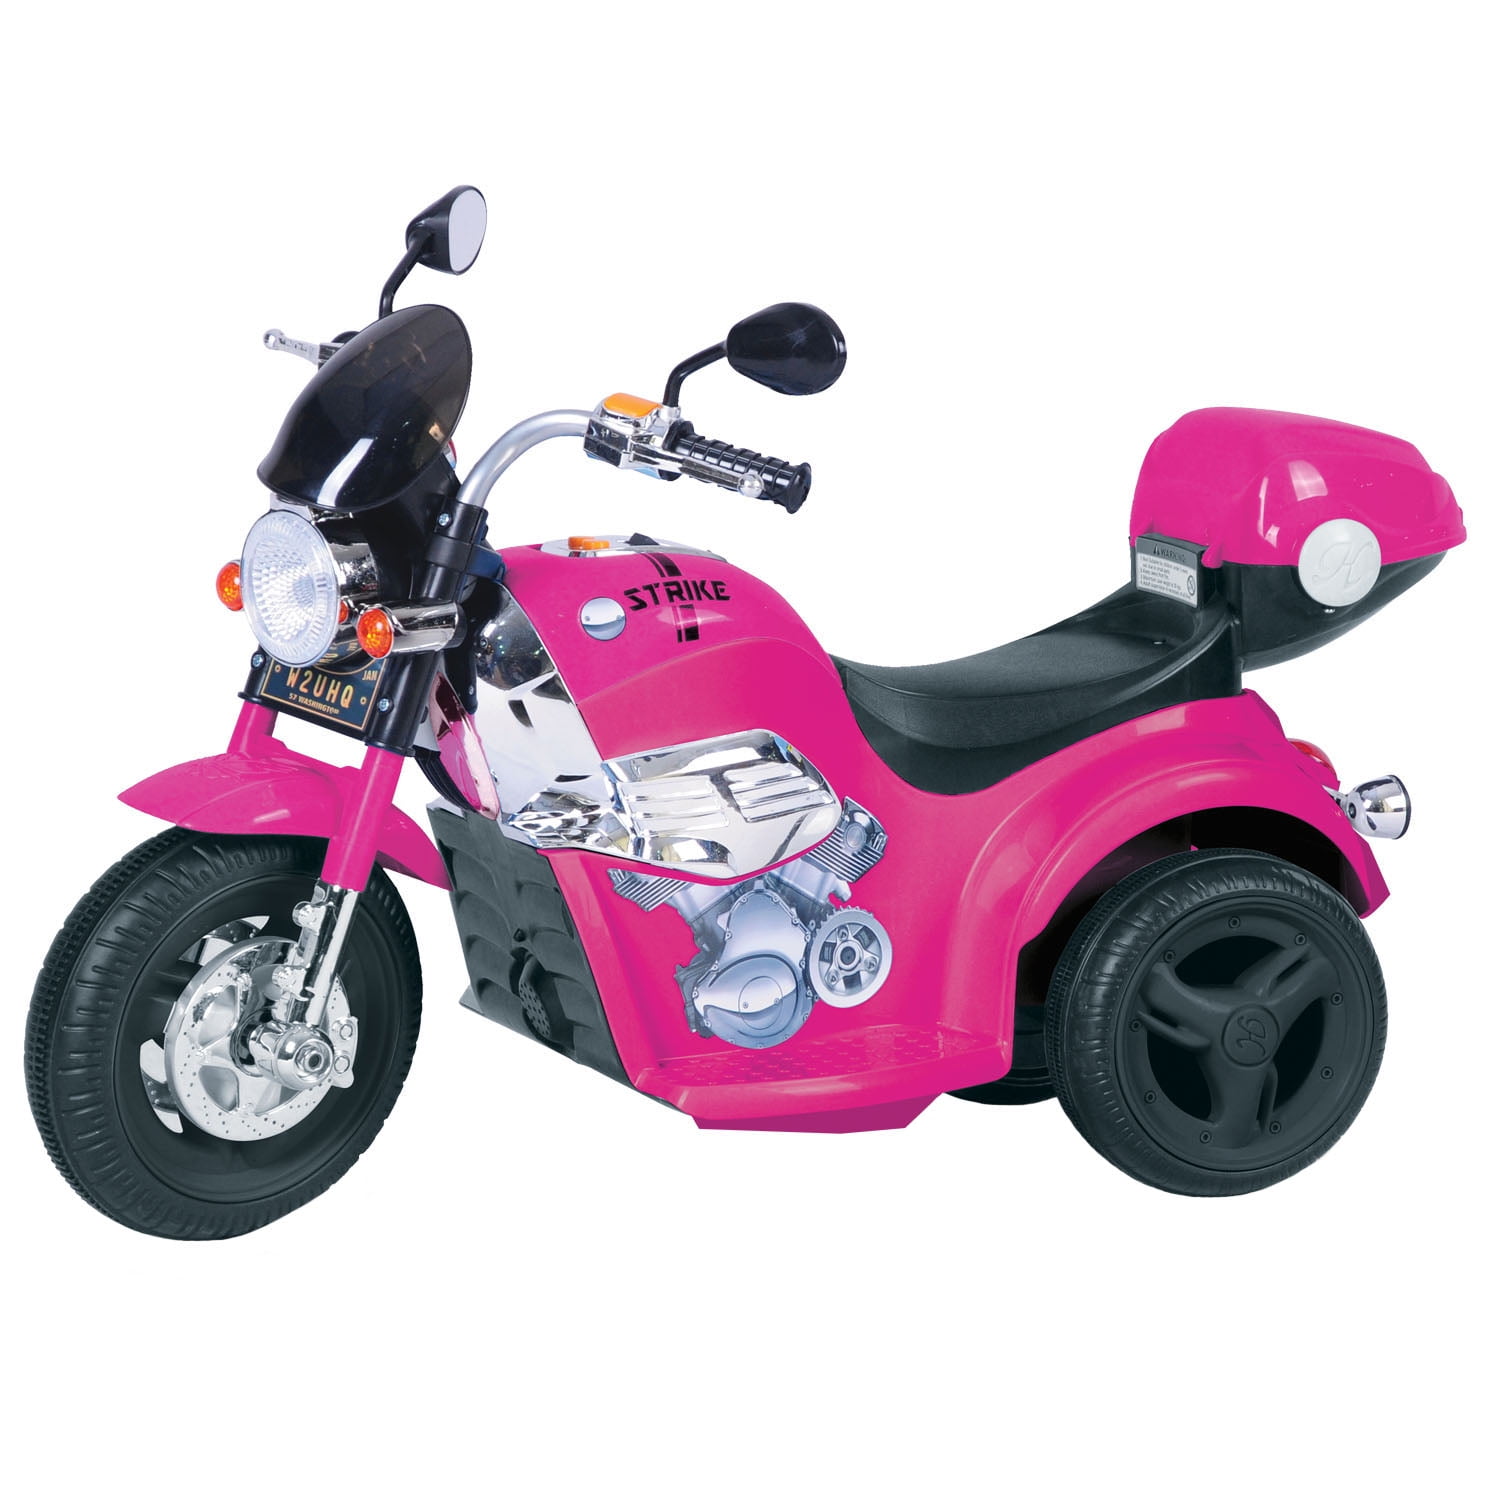 Kid Motorz Motorcycle in Pink (6V)